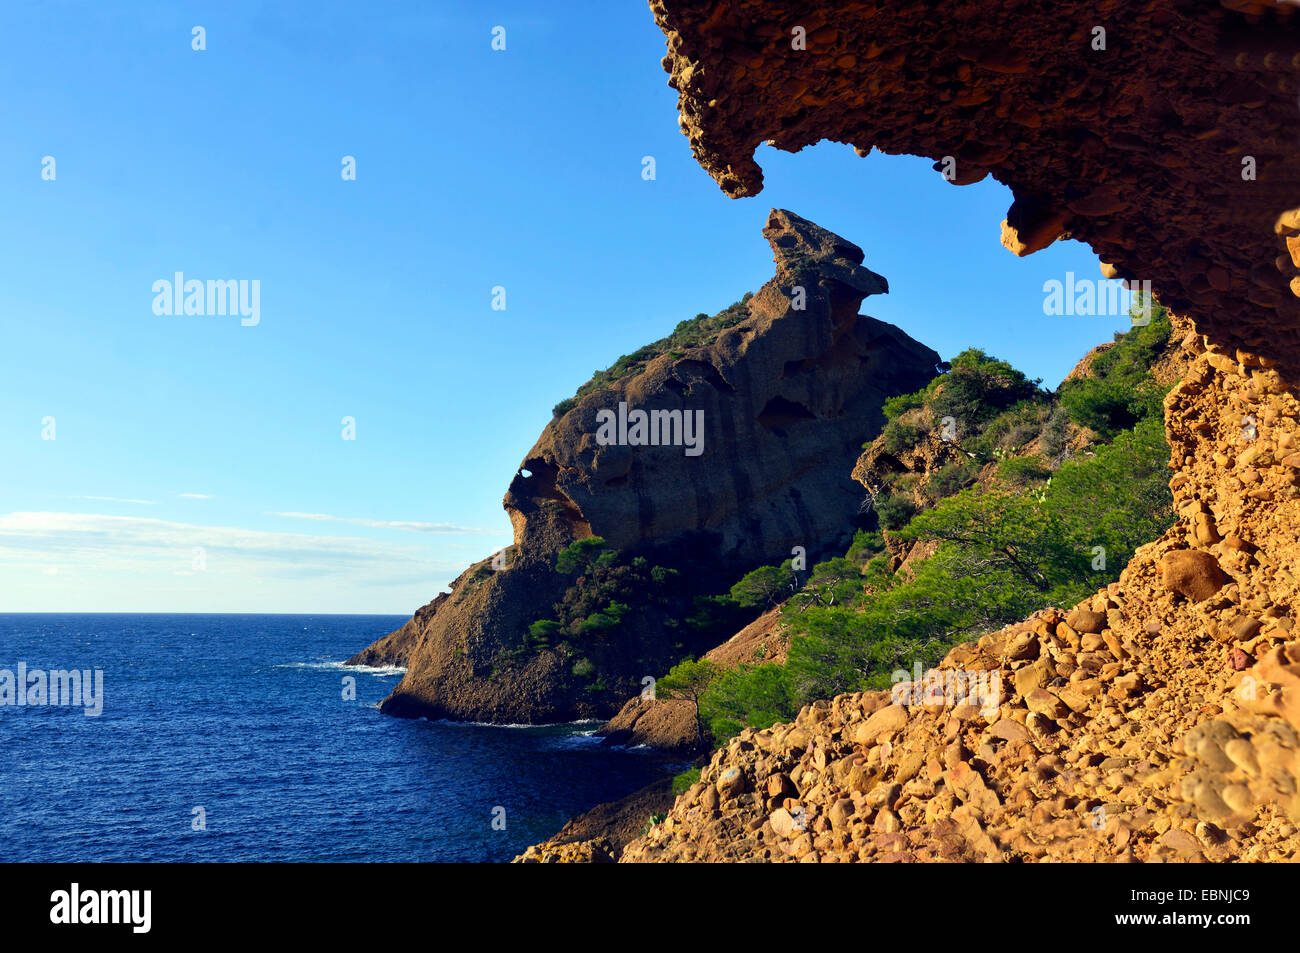 Calanque von Figuerolles, die Felsen im Hintergrund namens Grand ehemaliges, Frankreich, Calanques Nationalpark La Ciotat Stockfoto